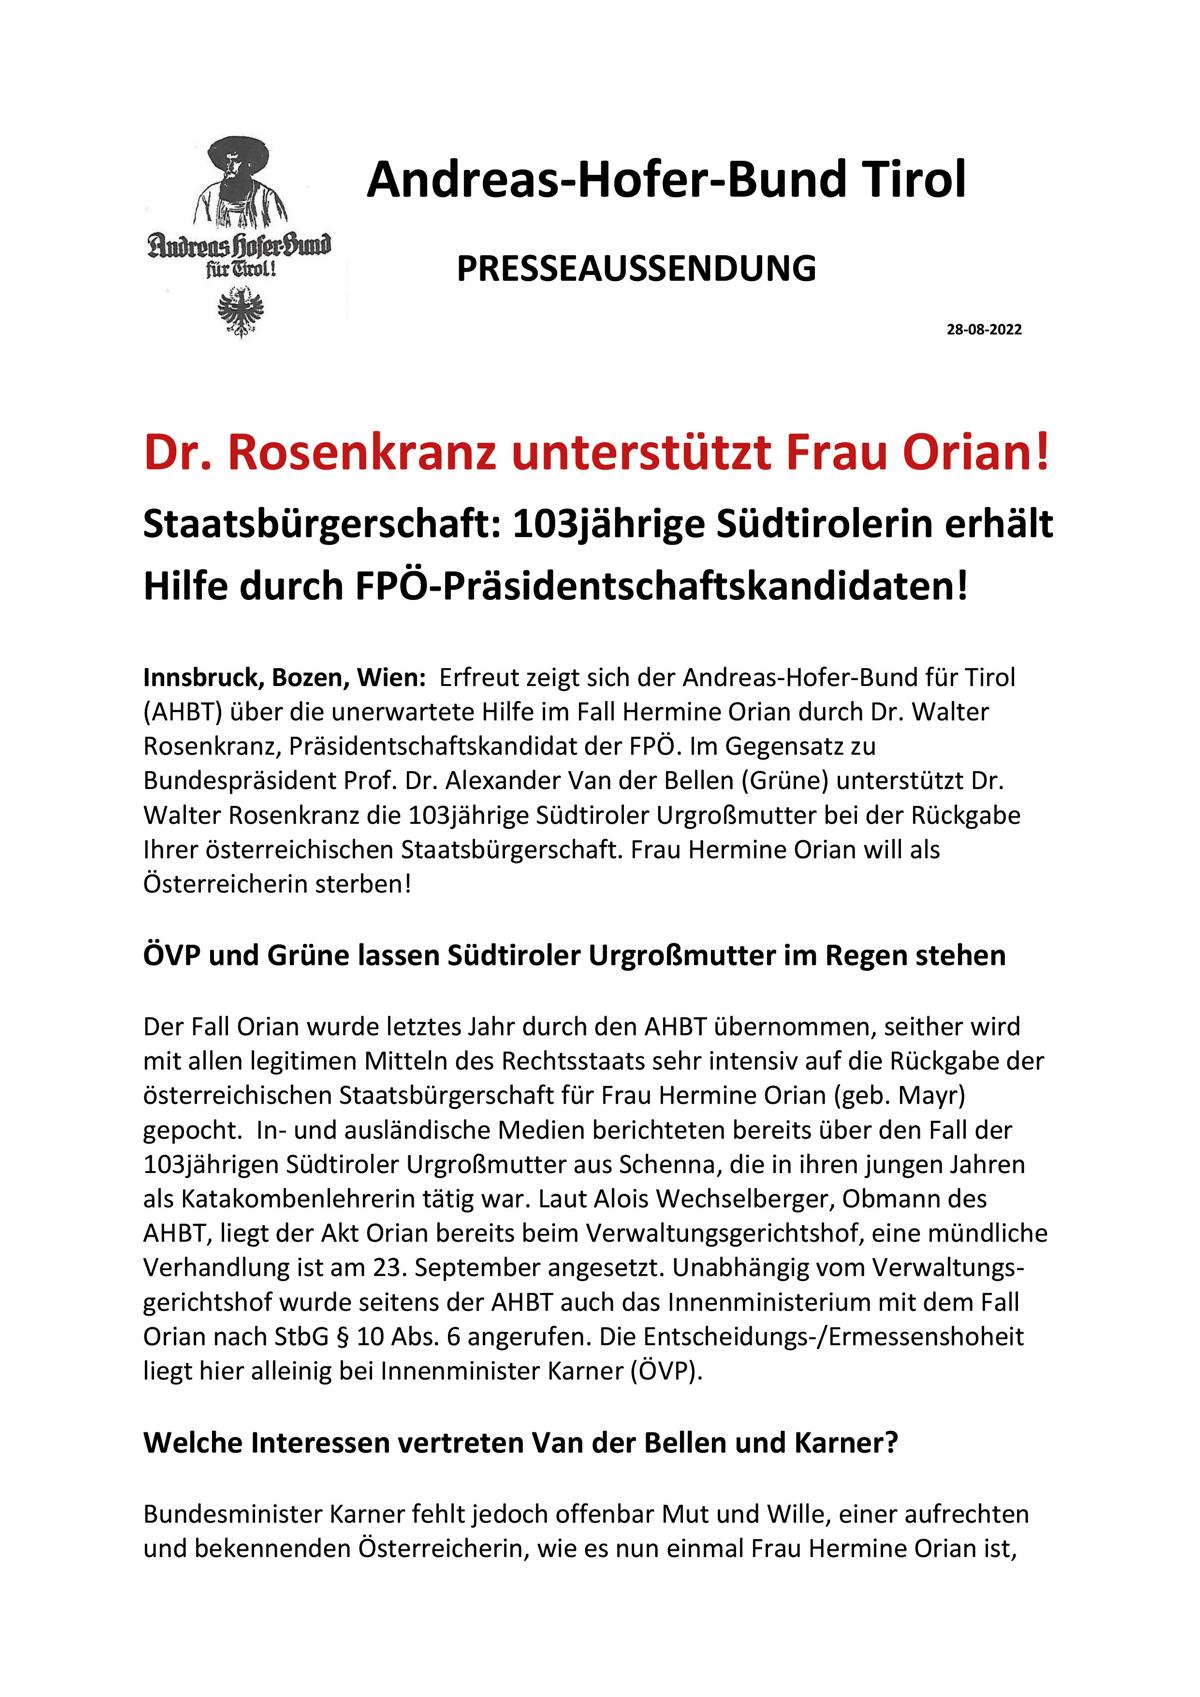 PA AHBT Dr. Walter Rosenkranz unterstützt Frau Hermine Orian